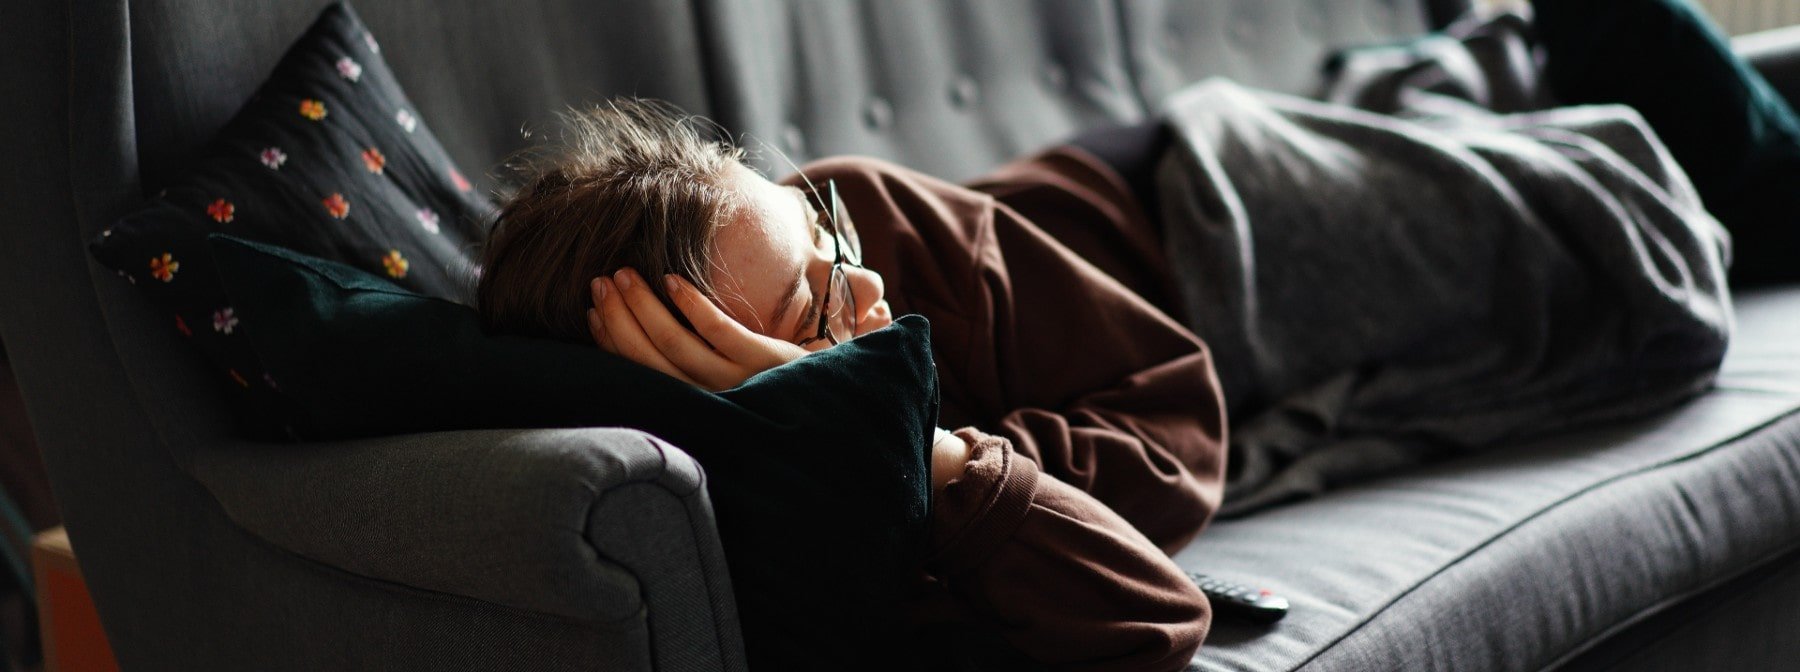 Проучване сочи, че кратките дремки не компенсират недоспиването 